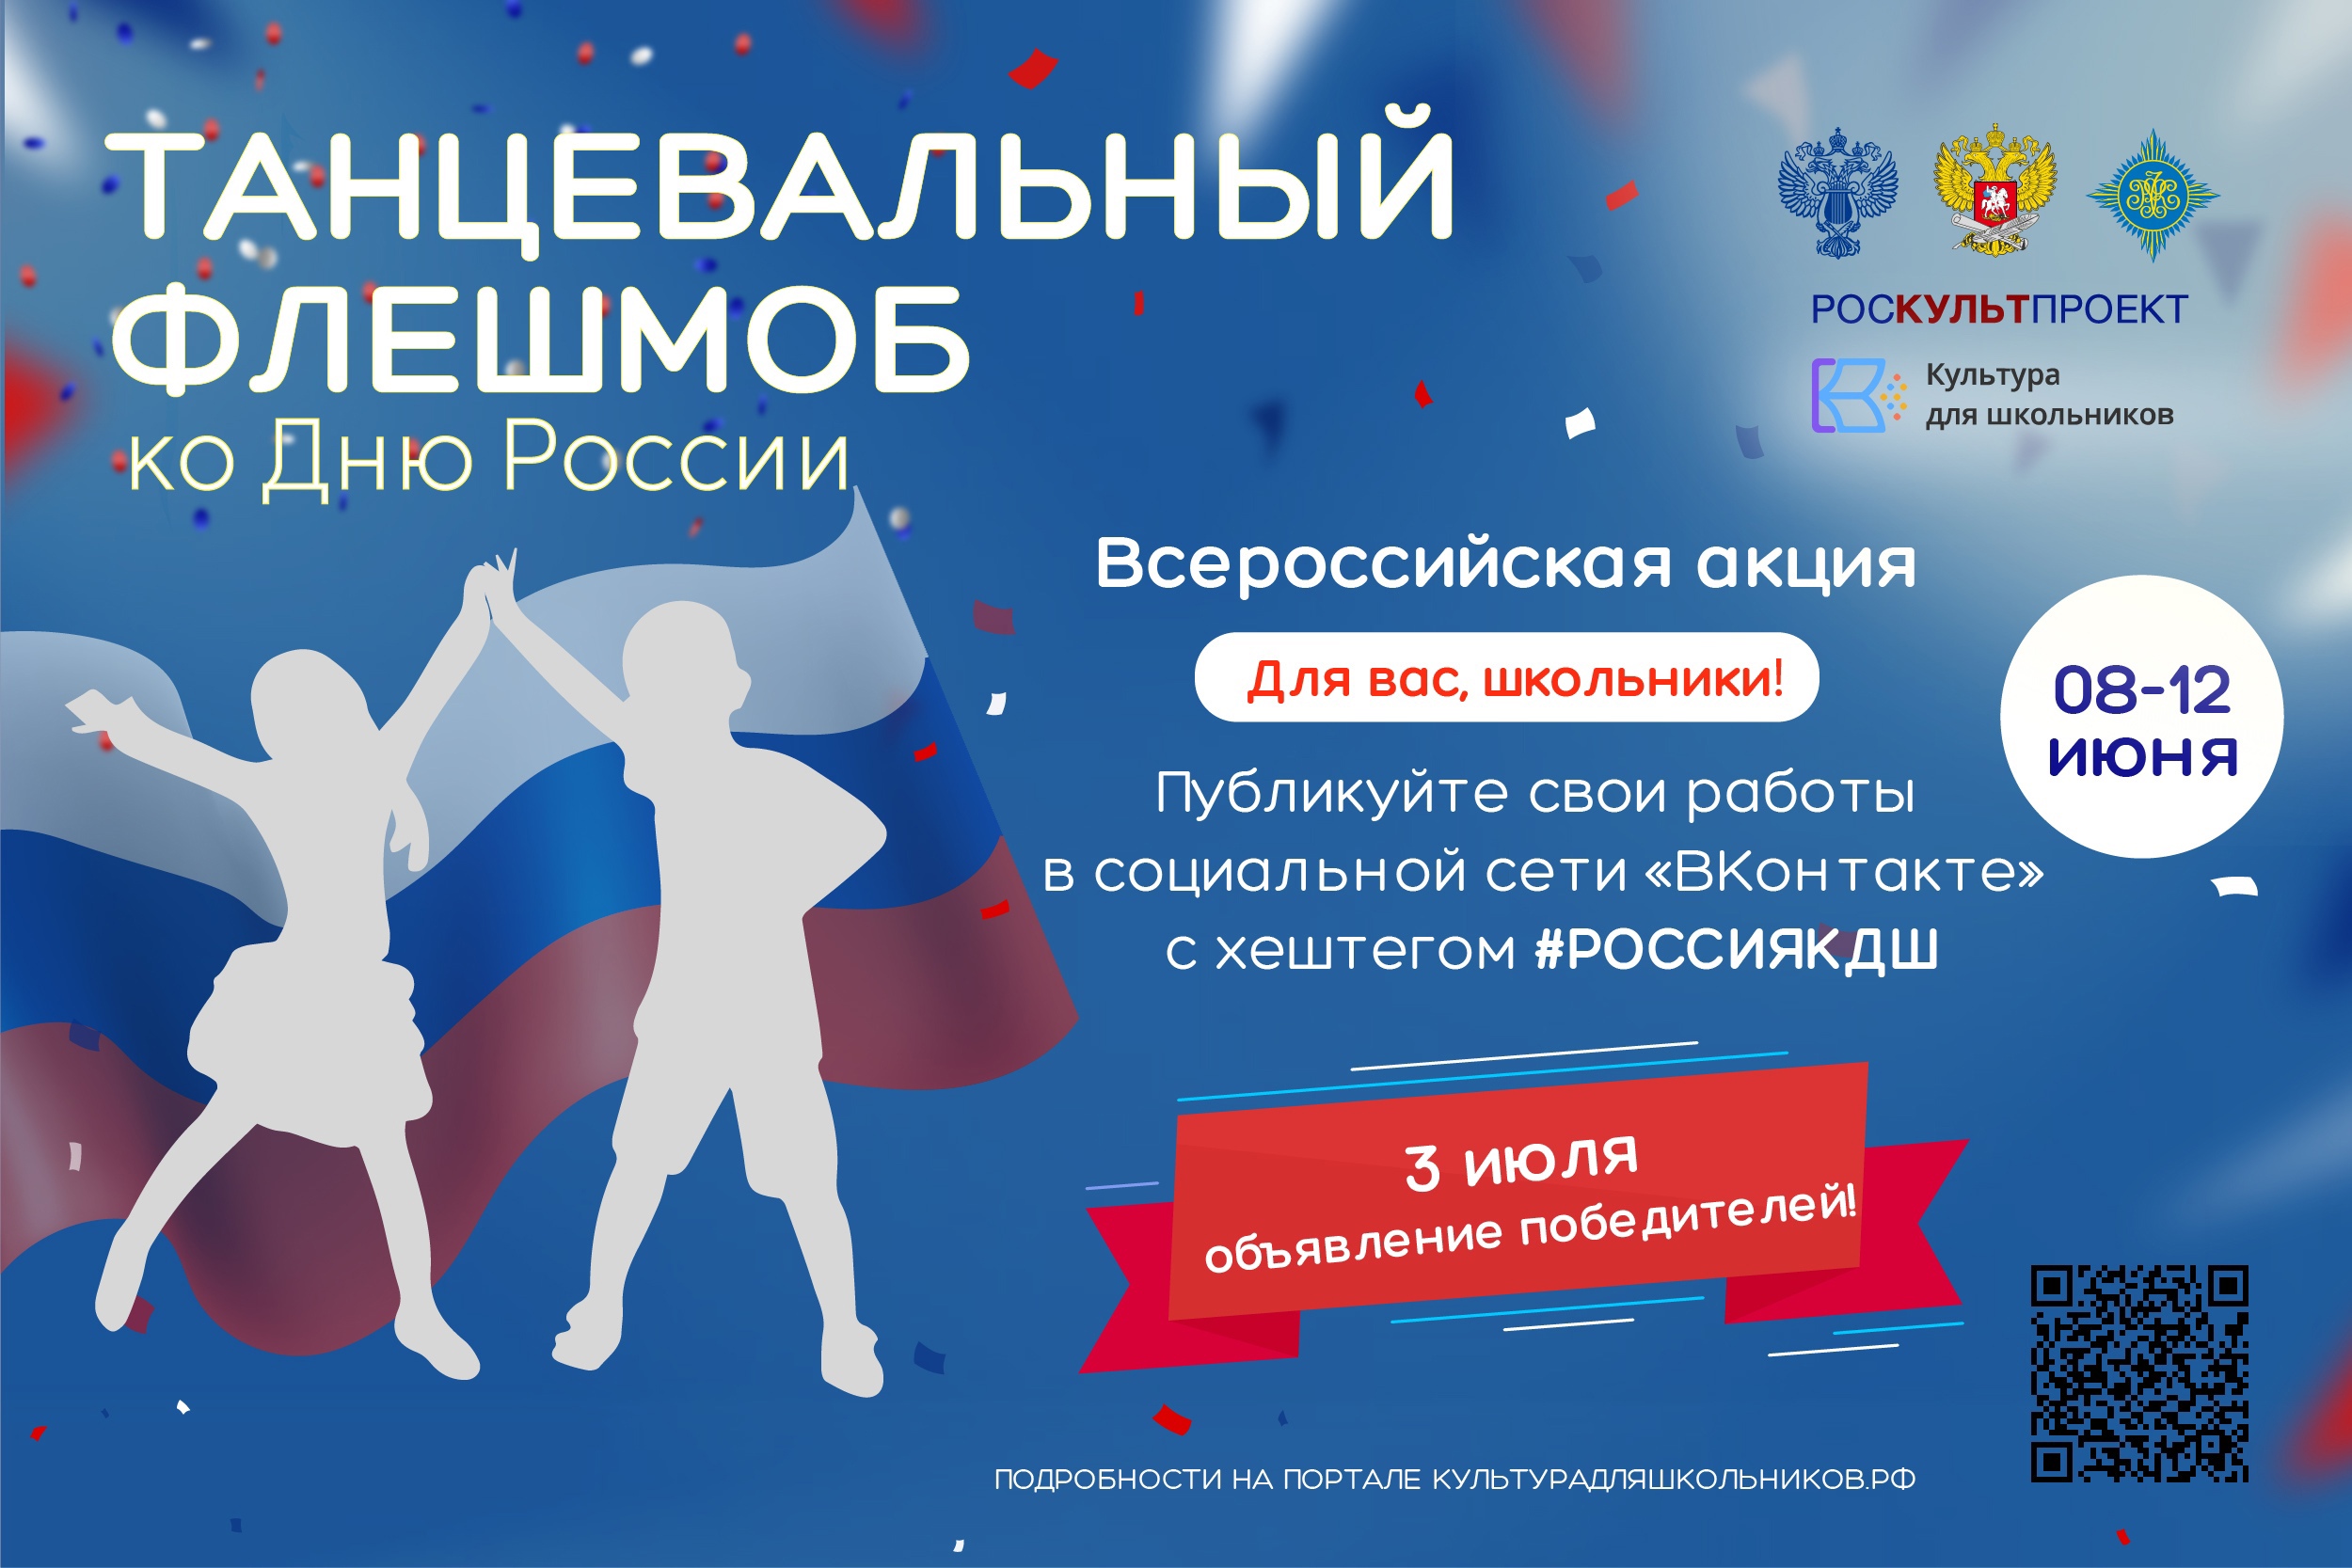 Брянская область присоединилась к танцевальному флешмобу ко Дню России